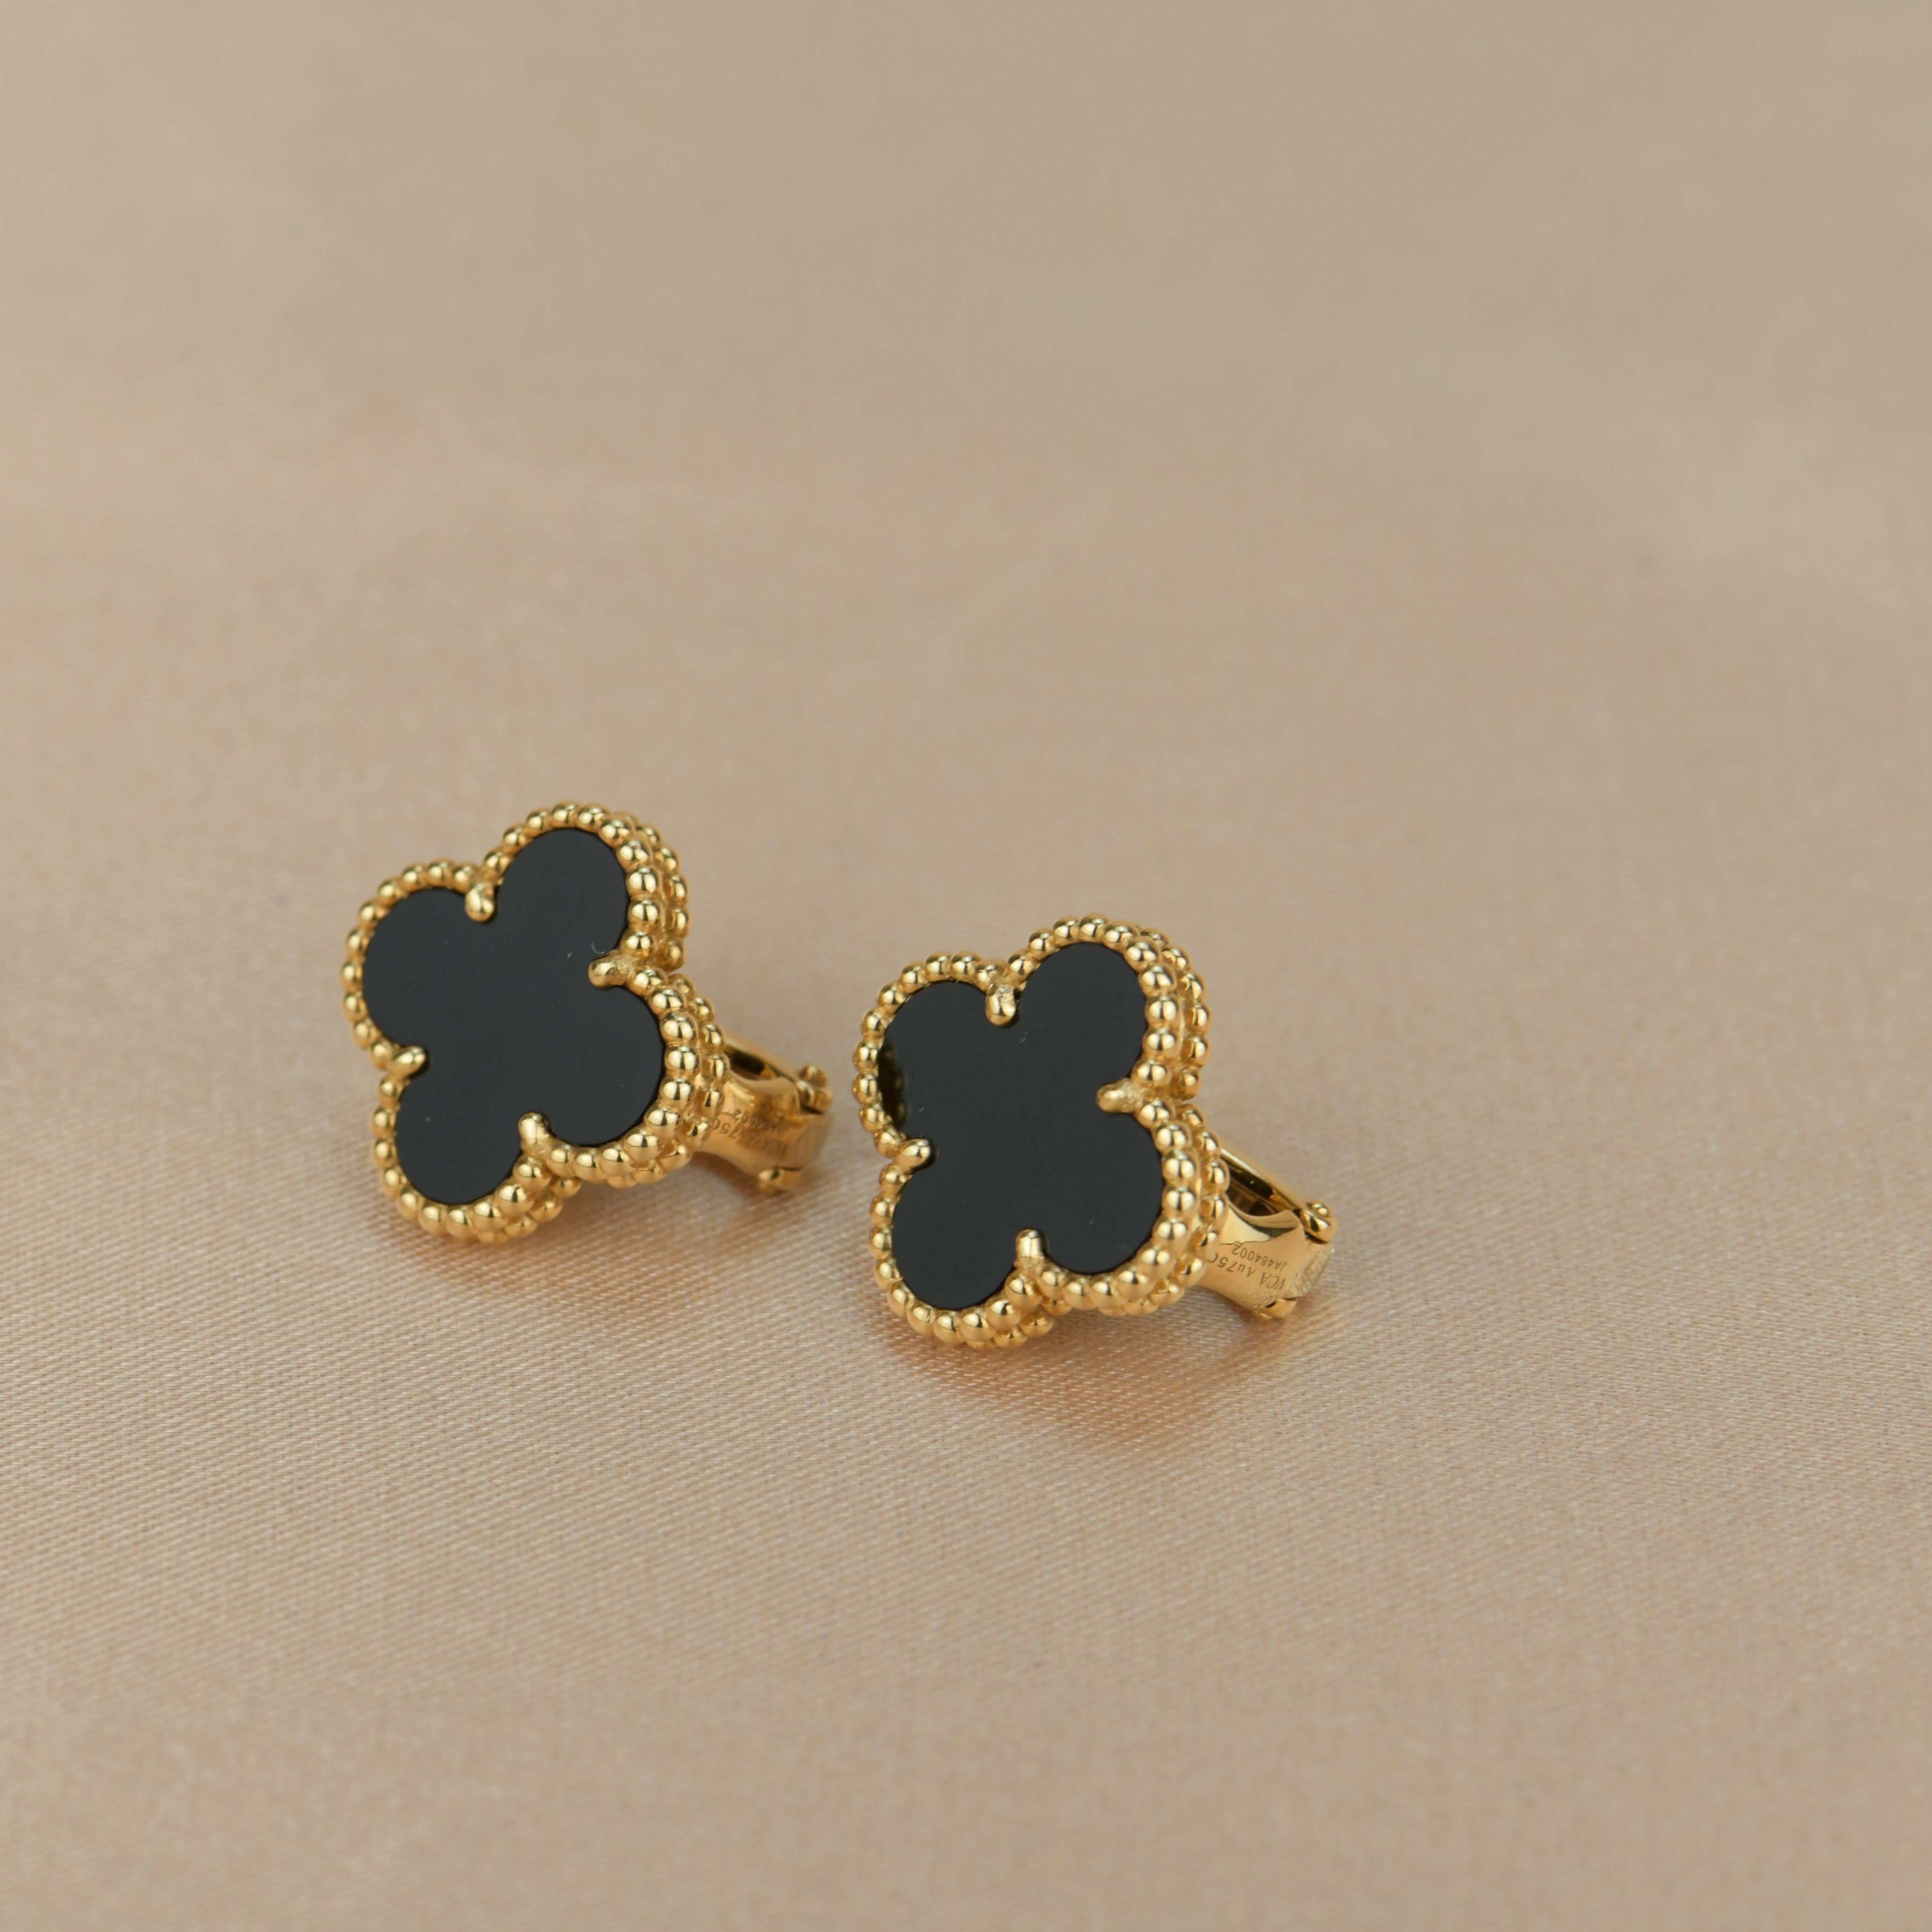 Uncut Van Cleef & Arpels Vintage Alhambra Black Onyx Yellow Gold Earrings